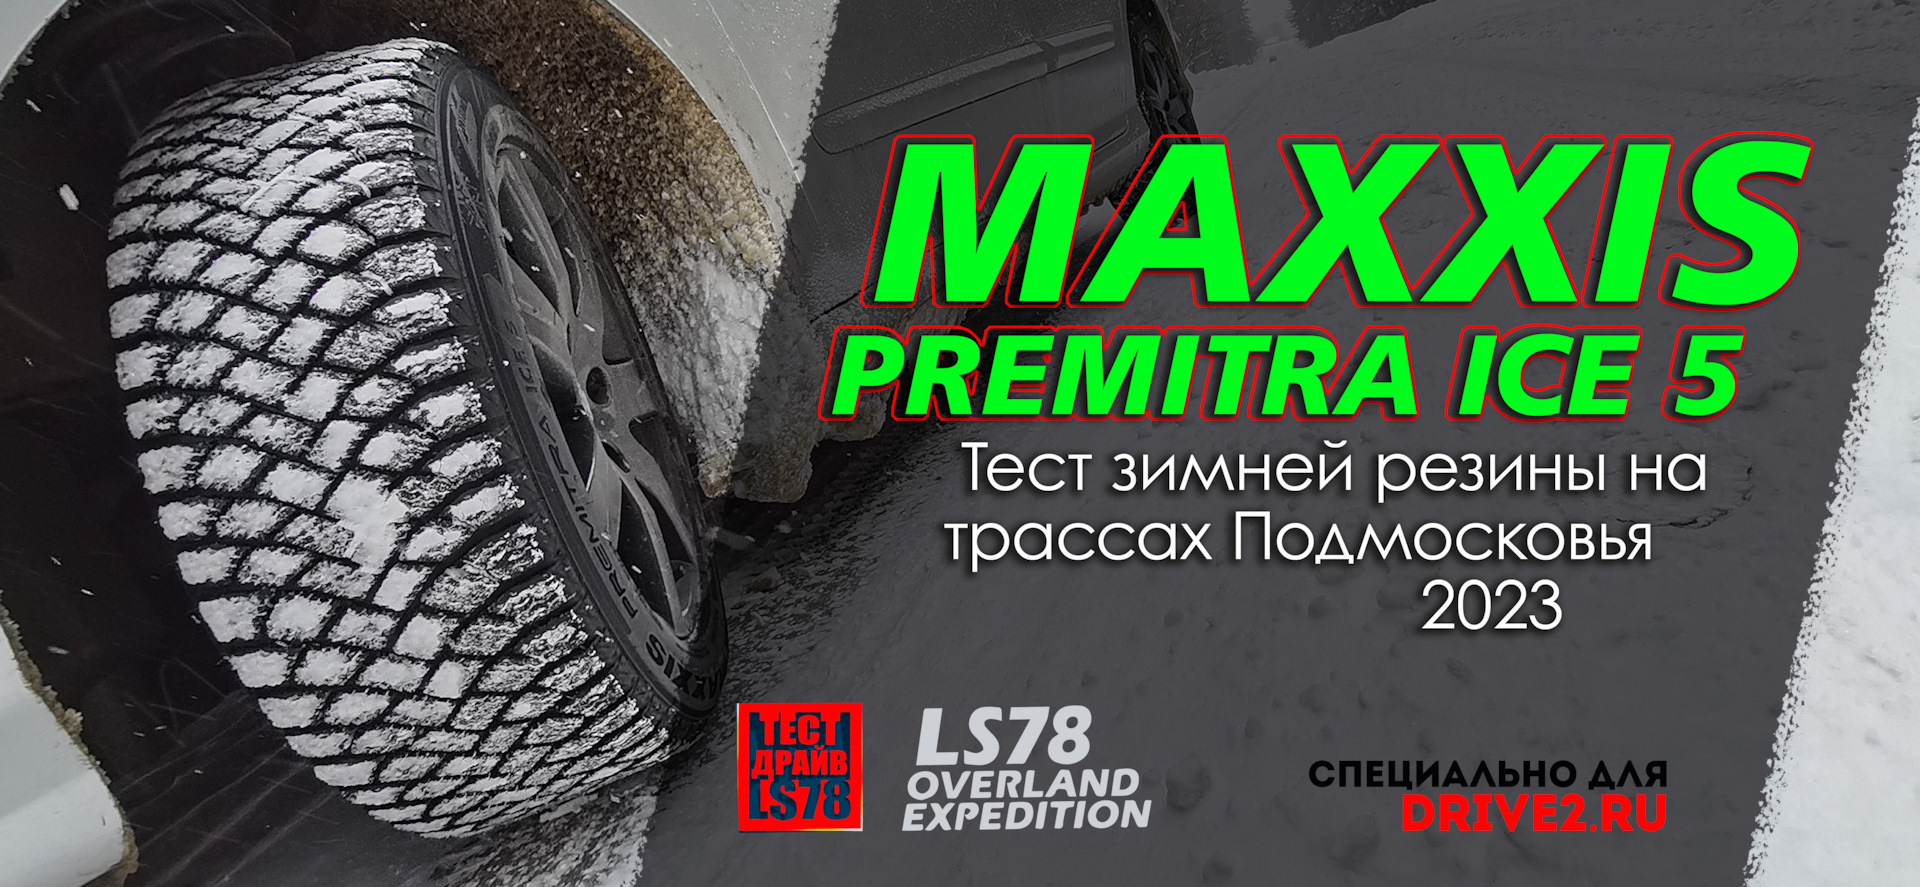 Maxxis Premitra Ice 5. Установка зимней резины. Maxxis Premitra Ice 5 SUV. Maxxis Premitra Ice 5 sp5 SUV 265/45 r21 108t. Максис премитра айс